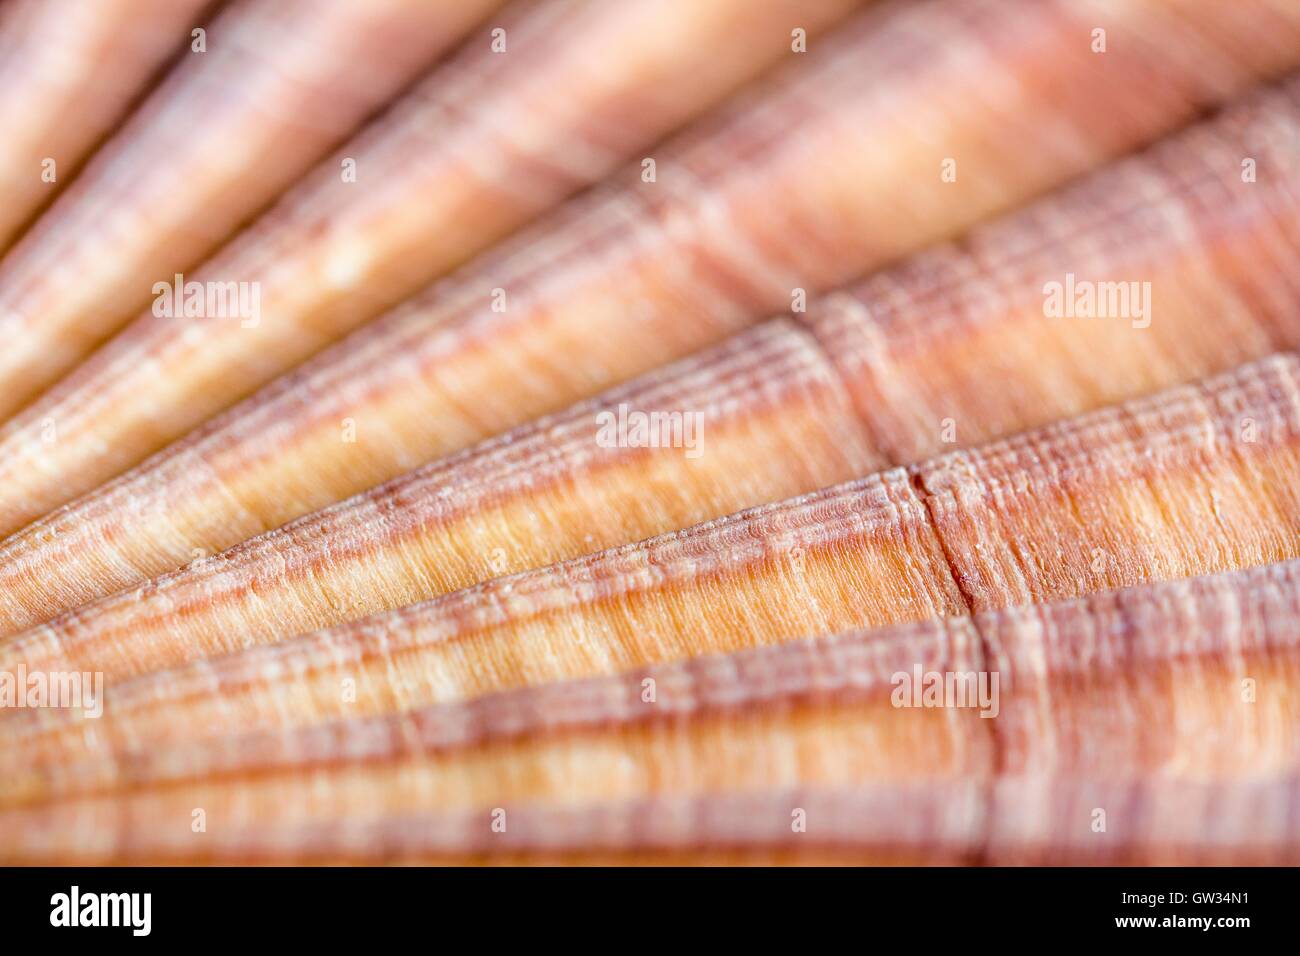 Striée rouge coquille Saint-Jacques, macrophotographie. La coquille d'un striées rouge (pétoncle Aequipecten glyptus), un mollusque bivalve marin. Coquilles de mollusques bivalves se composent de deux pièces d'articulation, ou des soupapes. La taille de l'objet horizontal de cette section de l'image : 15 mm. Banque D'Images